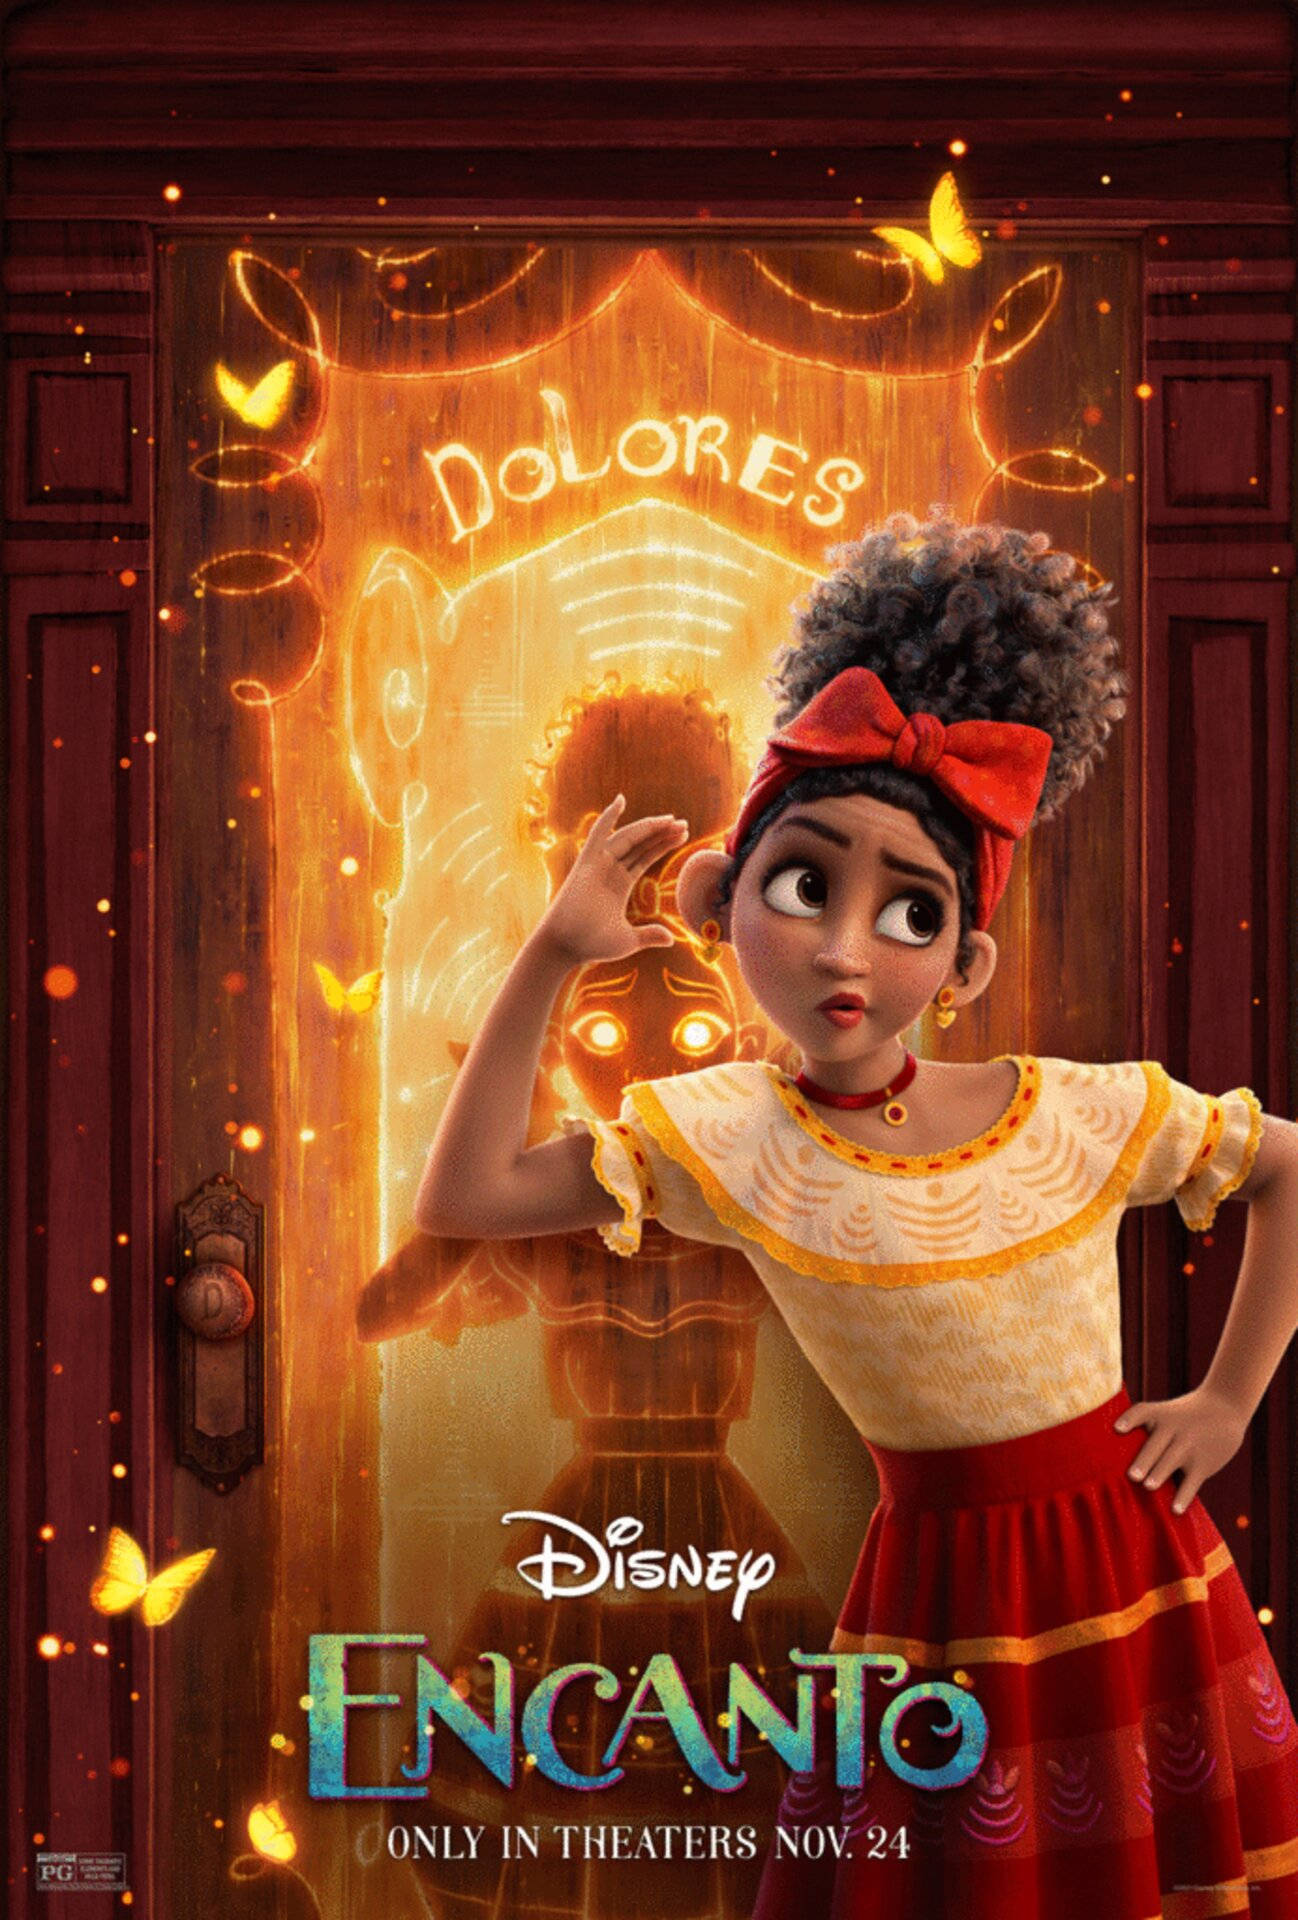 Disney Encanto Dolores